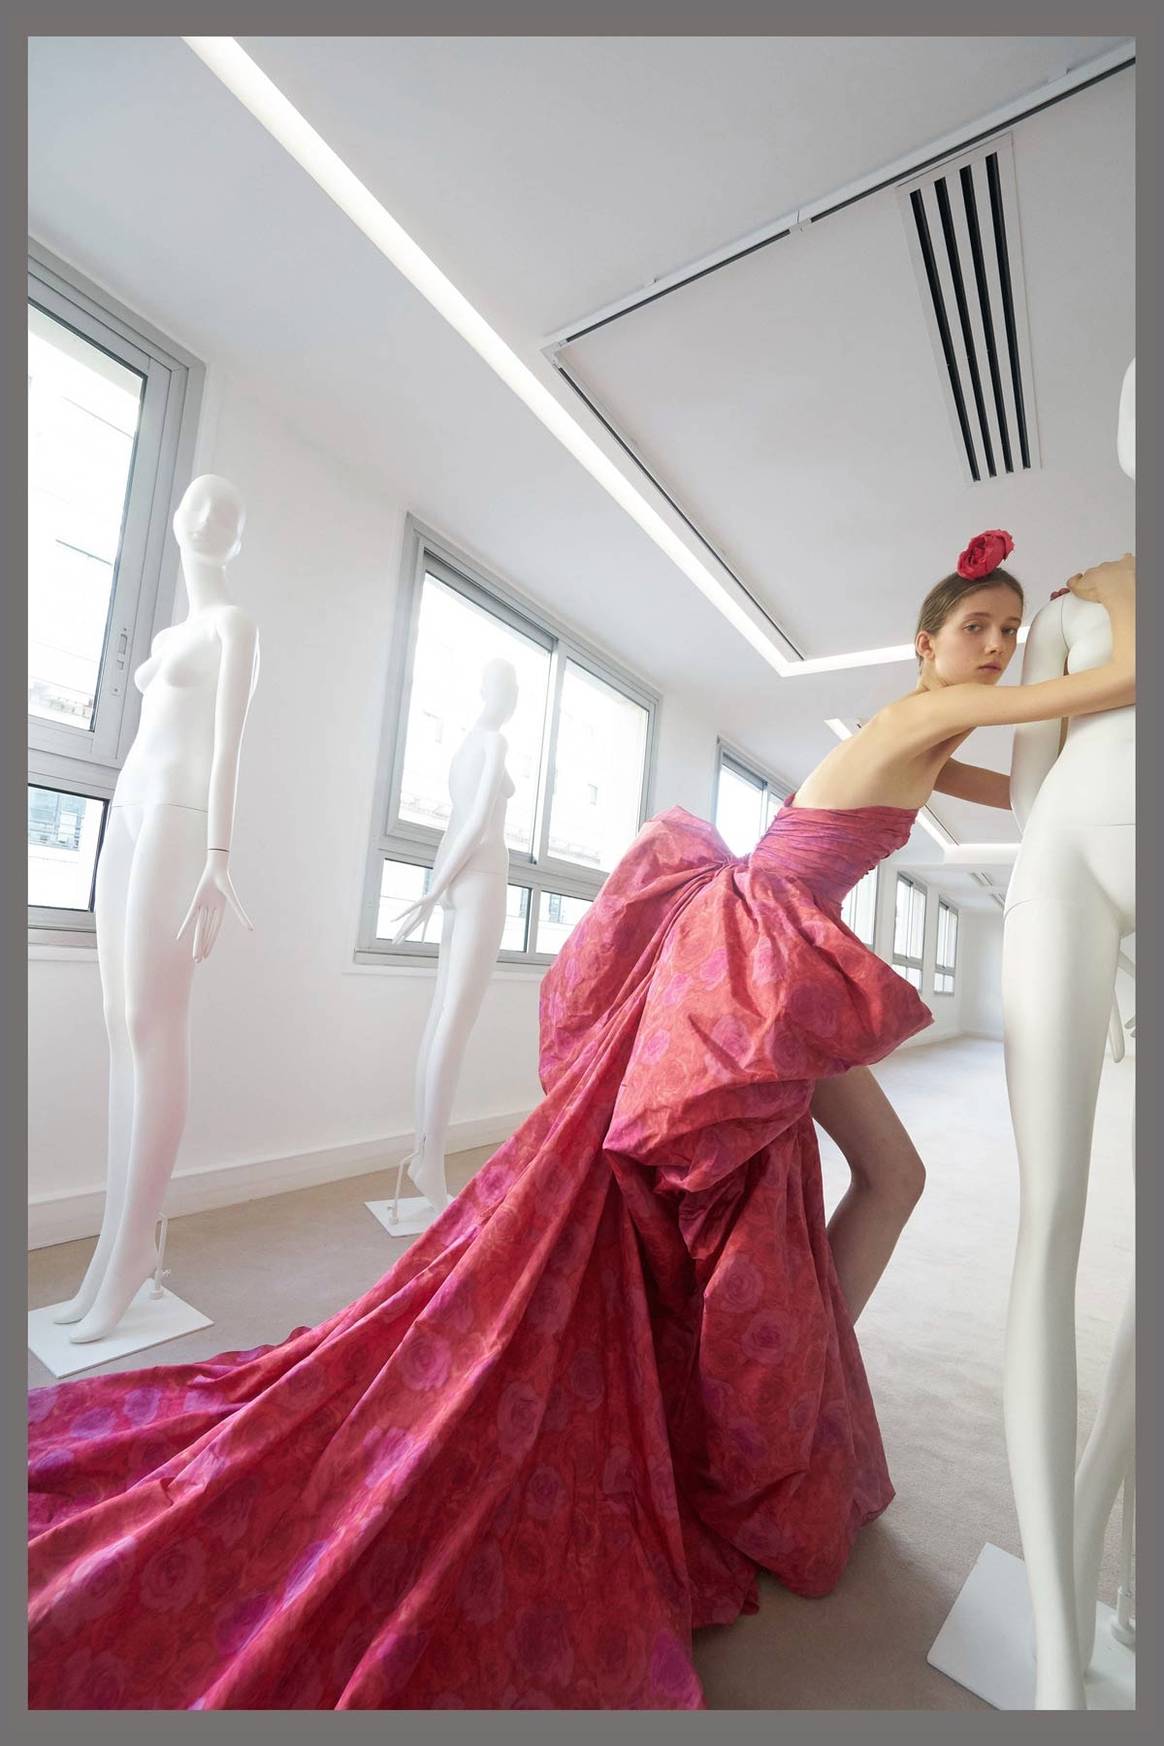 Couture AW19: Giambattista Valli skips catwalk